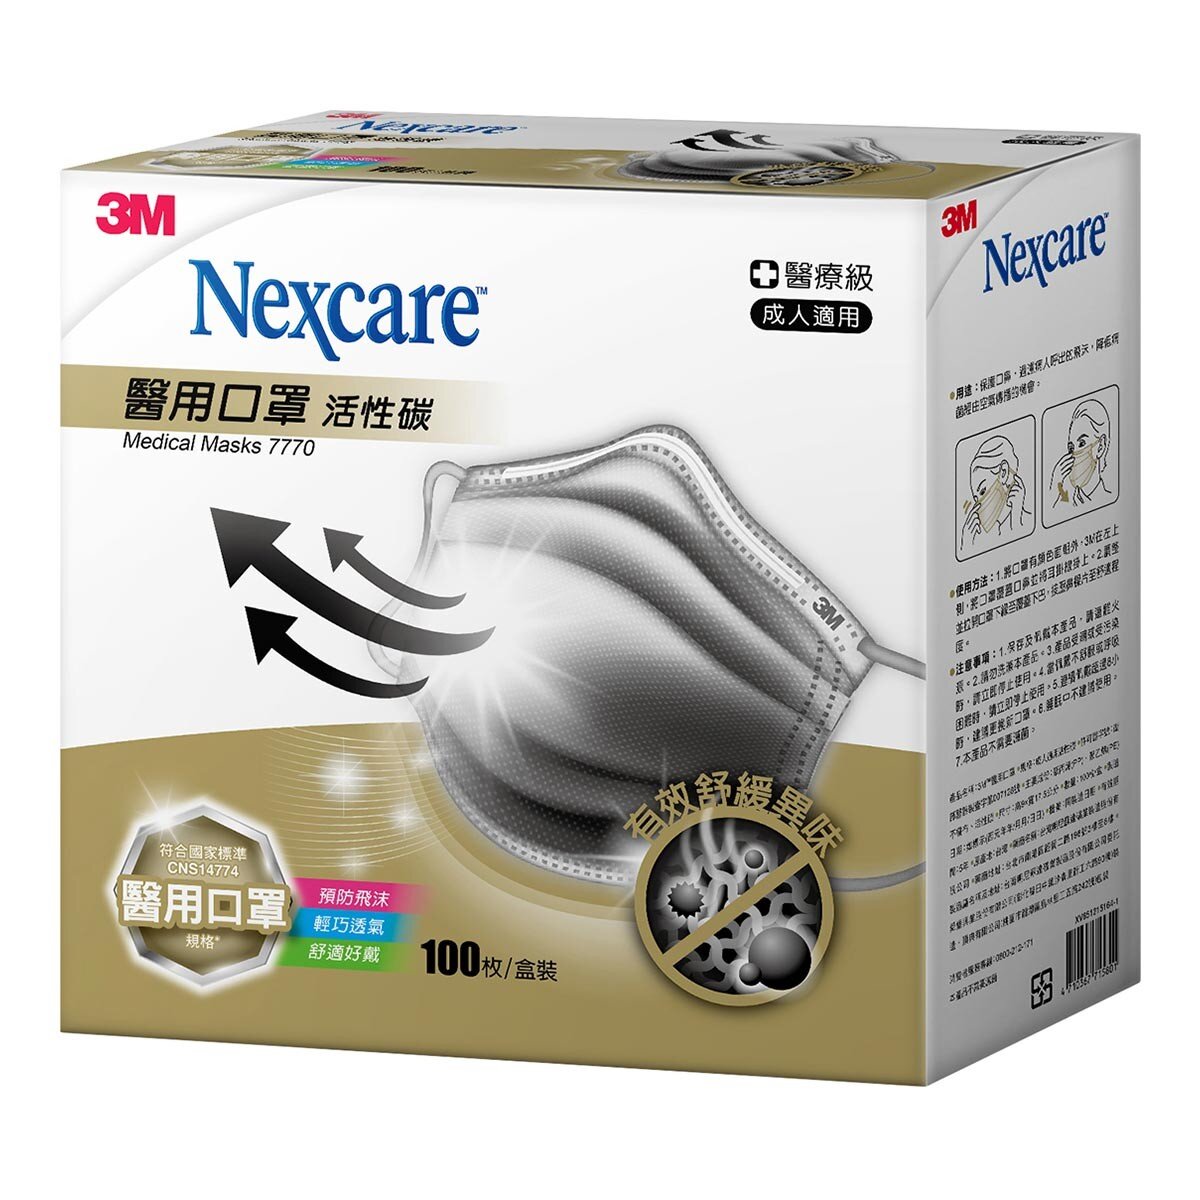 3M Nexcare 醫用活性碳口罩 100入